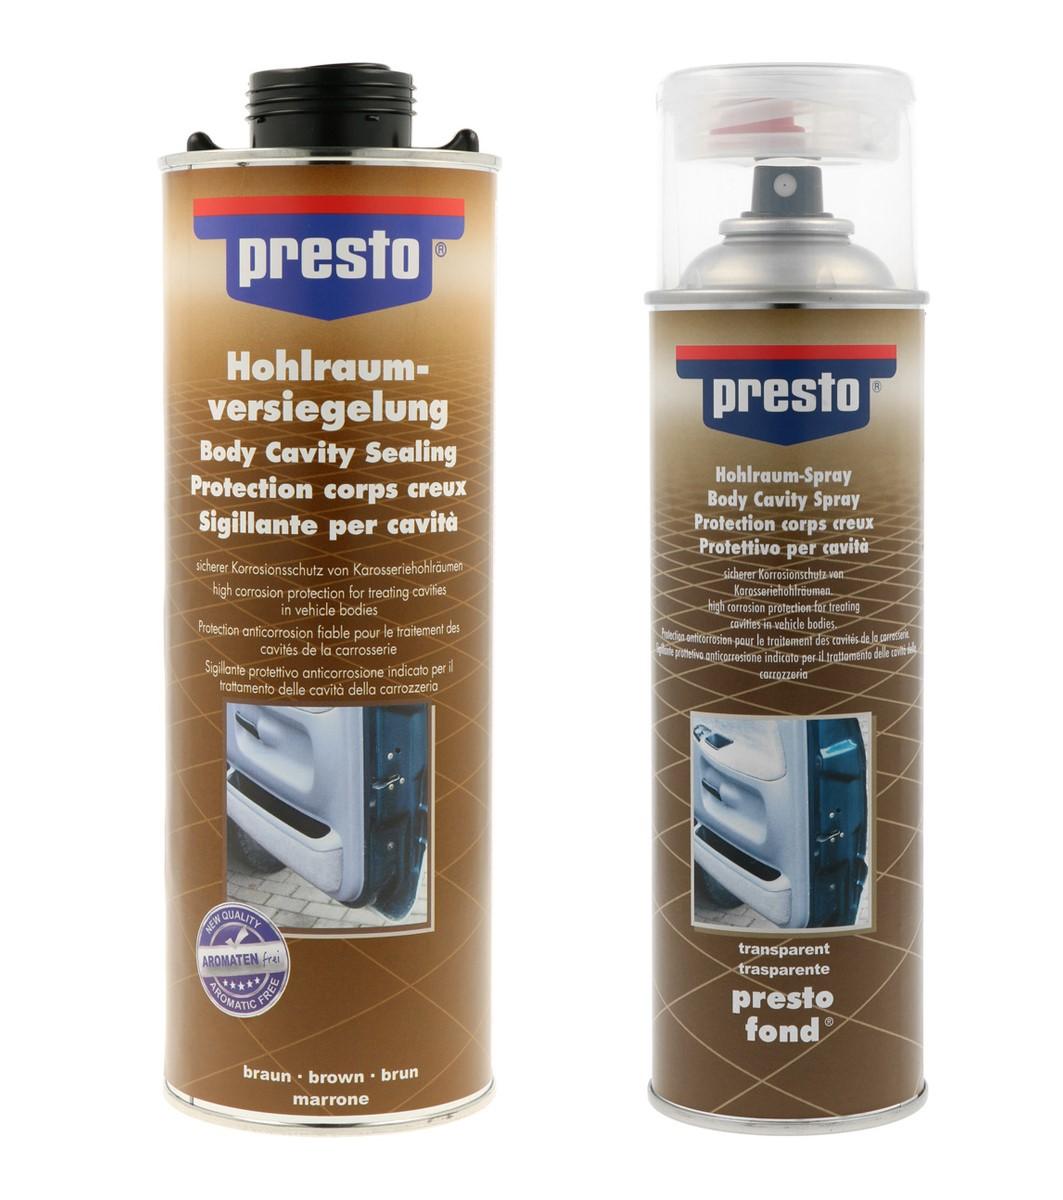 Presto Hohlraumschutz-Spray, Hohlraumkonservierung - verschiedene Ausführung